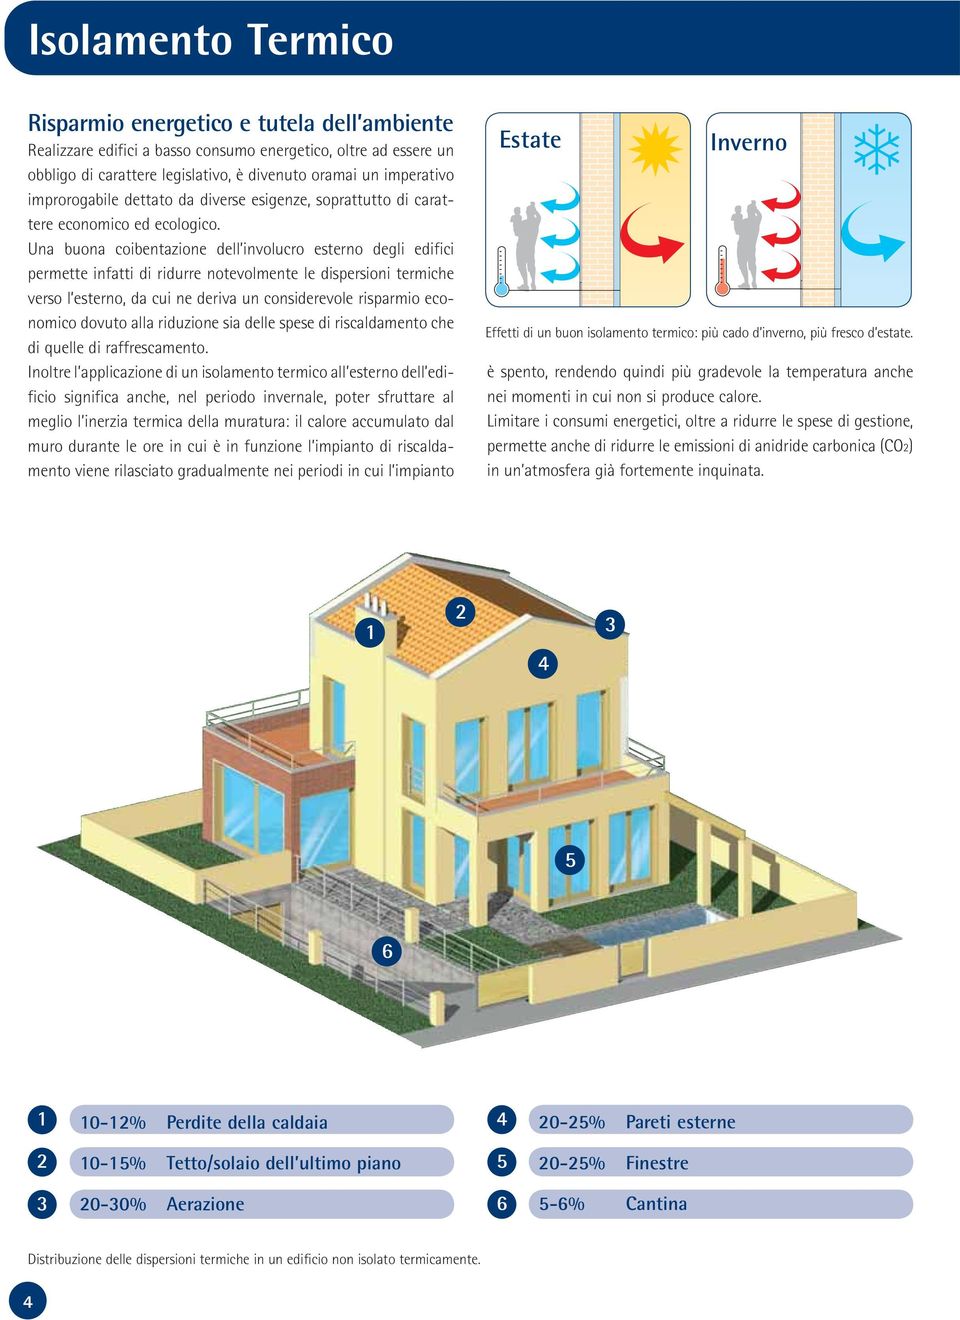 Una buona coibentazione dell involucro esterno degli edifici permette infatti di ridurre notevolmente le dispersioni termiche verso l esterno, da cui ne deriva un considerevole risparmio economico